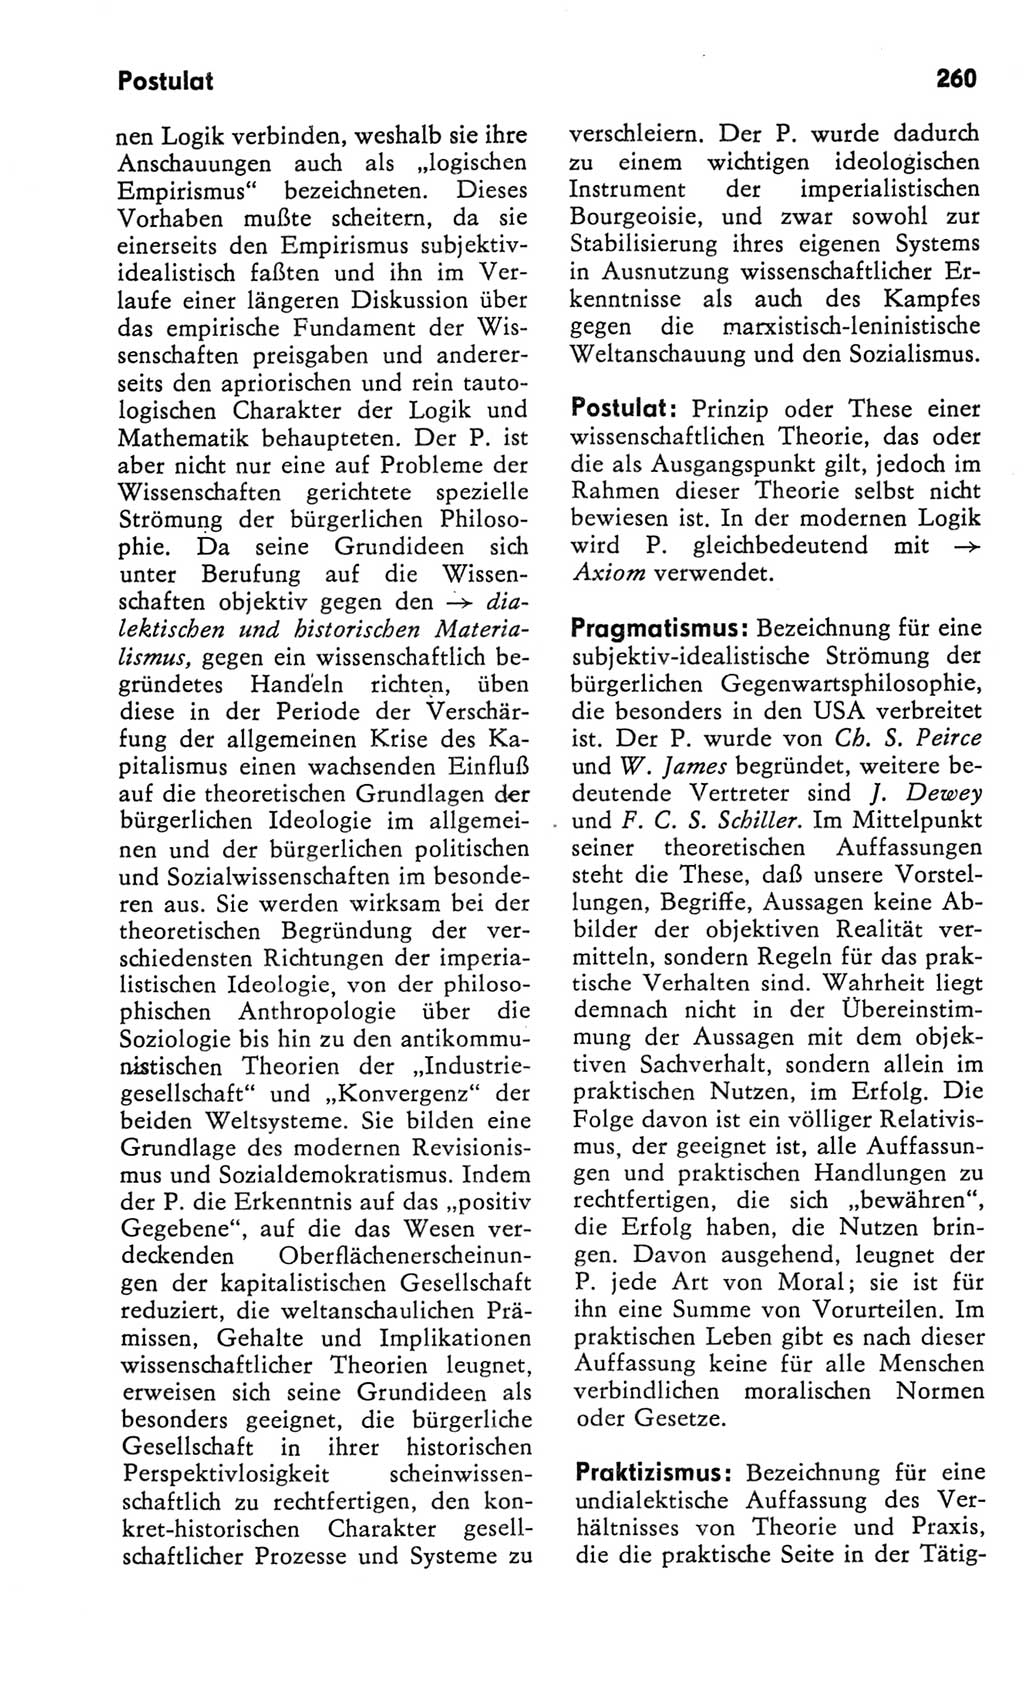 Kleines Wörterbuch der marxistisch-leninistischen Philosophie [Deutsche Demokratische Republik (DDR)] 1982, Seite 260 (Kl. Wb. ML Phil. DDR 1982, S. 260)